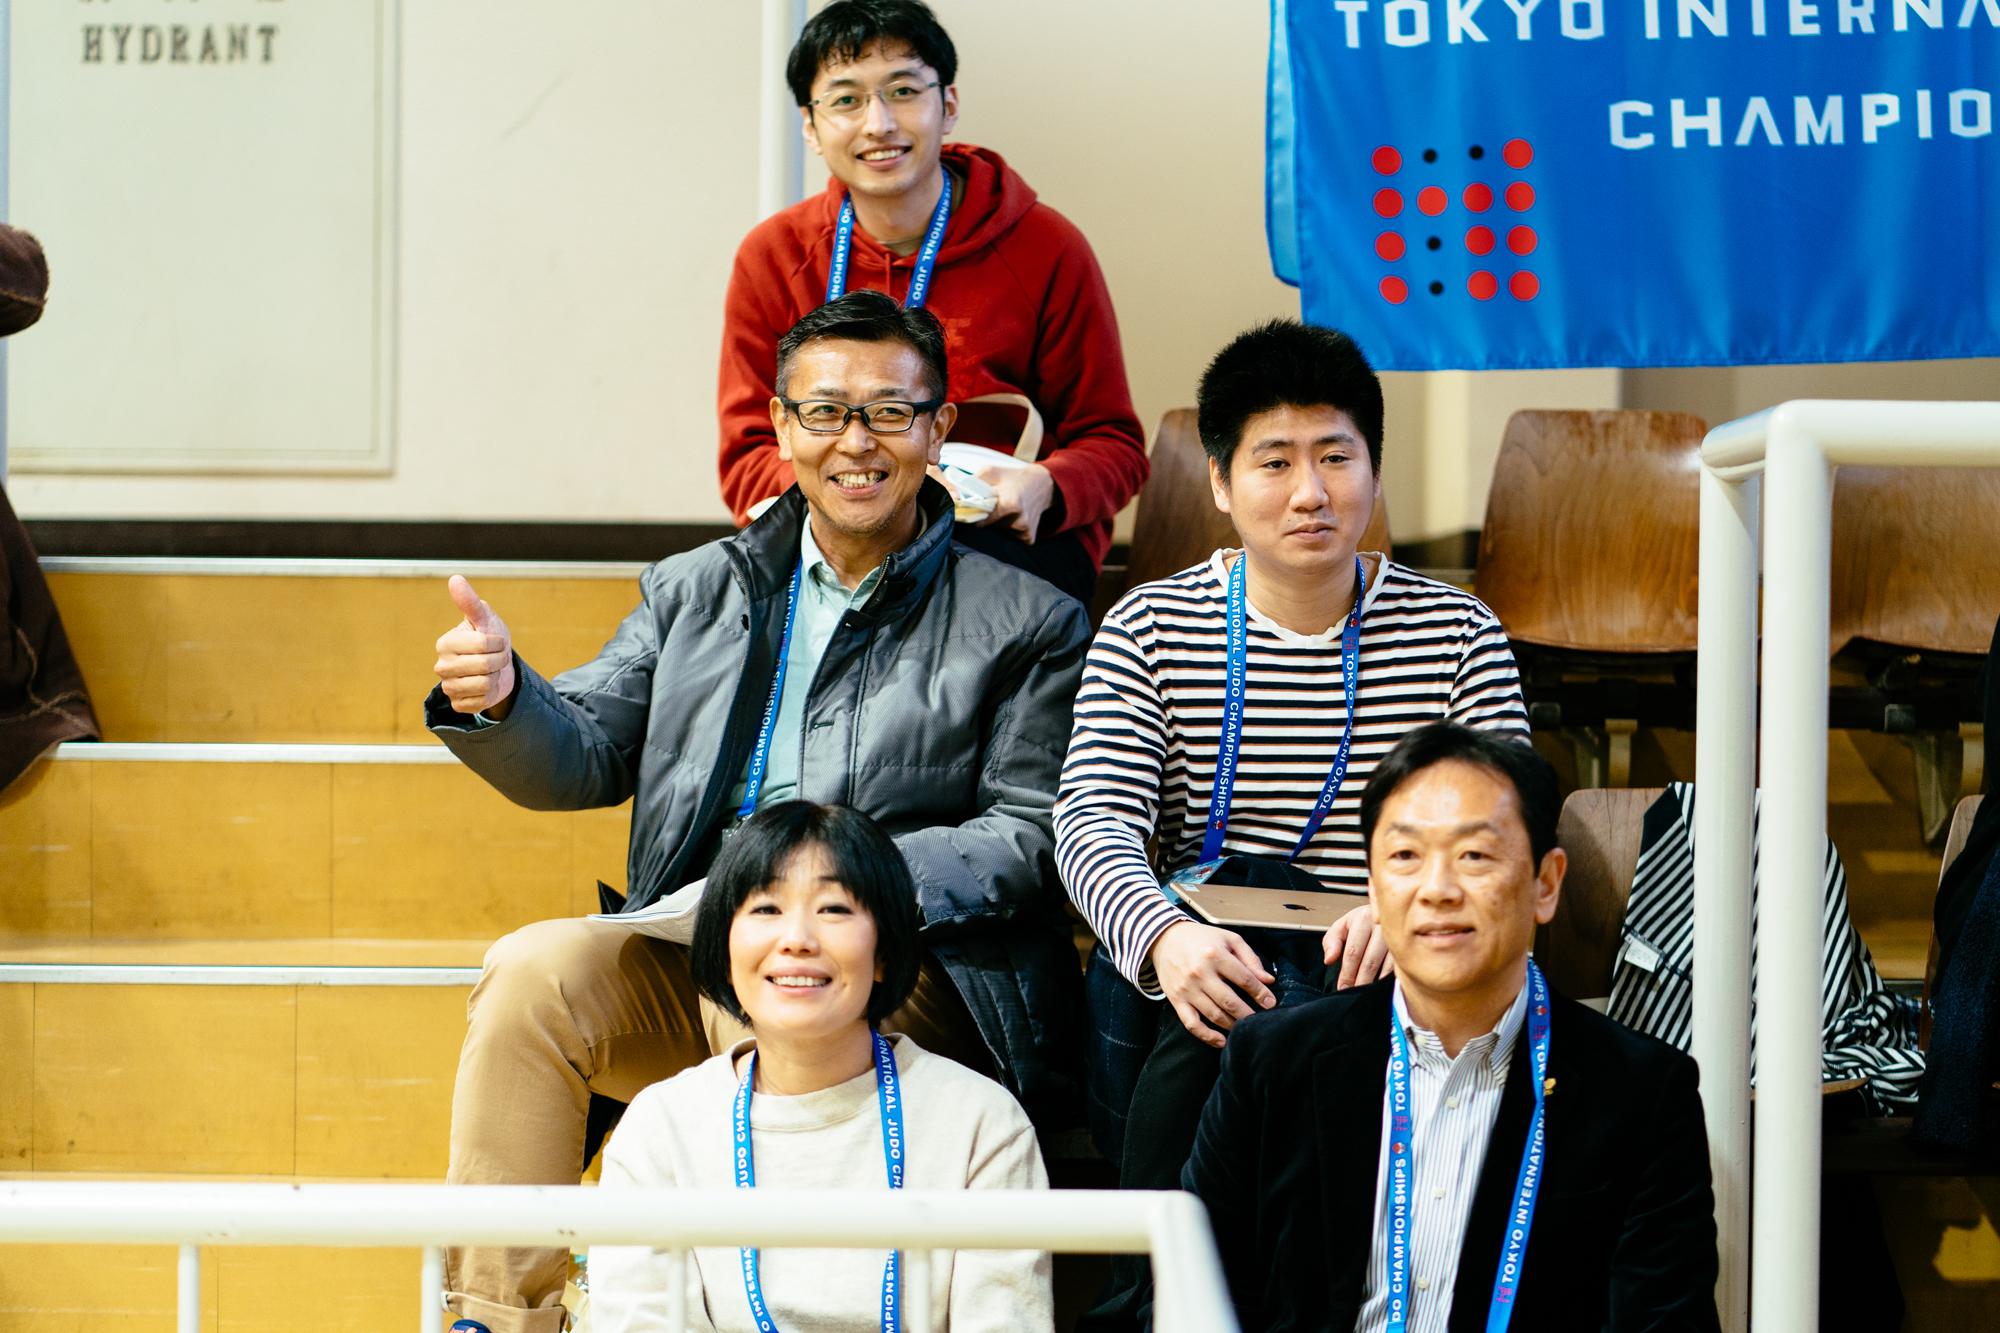 4分間に全てを懸ける！「東京国際視覚障害者柔道選手権大会2019」での熱い戦い